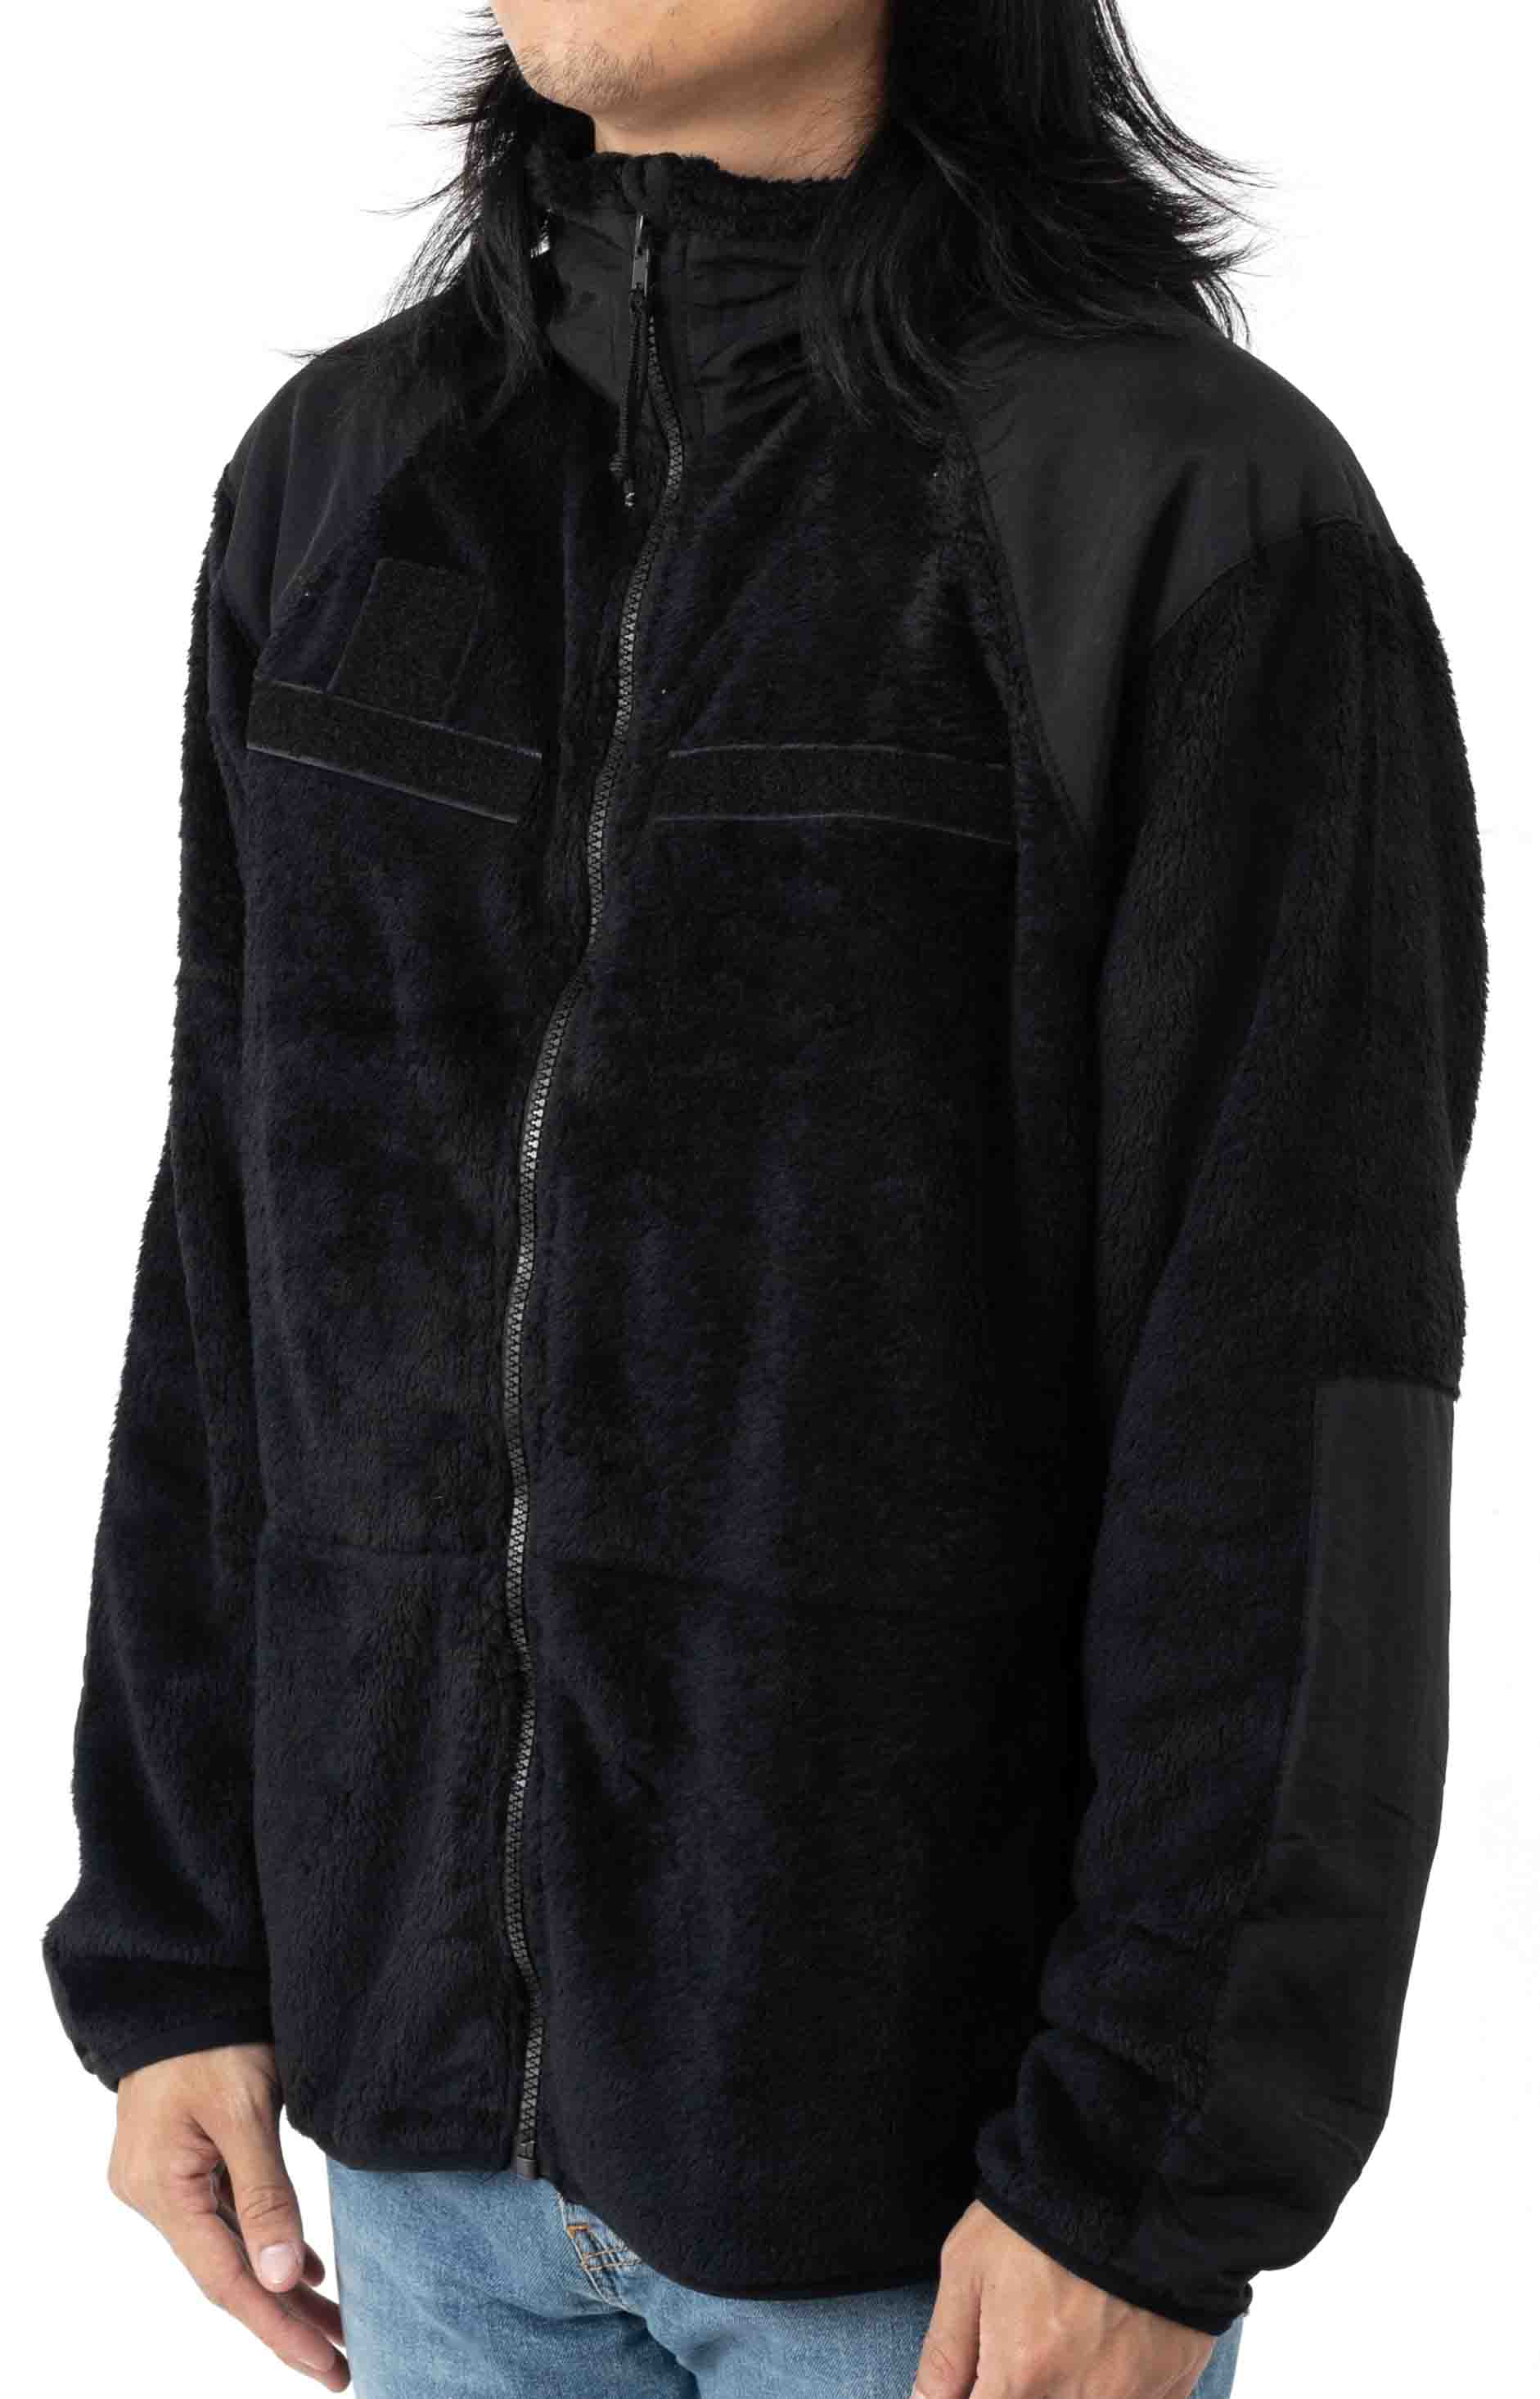 (9739) Rothco Generation III Level 3 ECWCS Fleece Jacket - Black